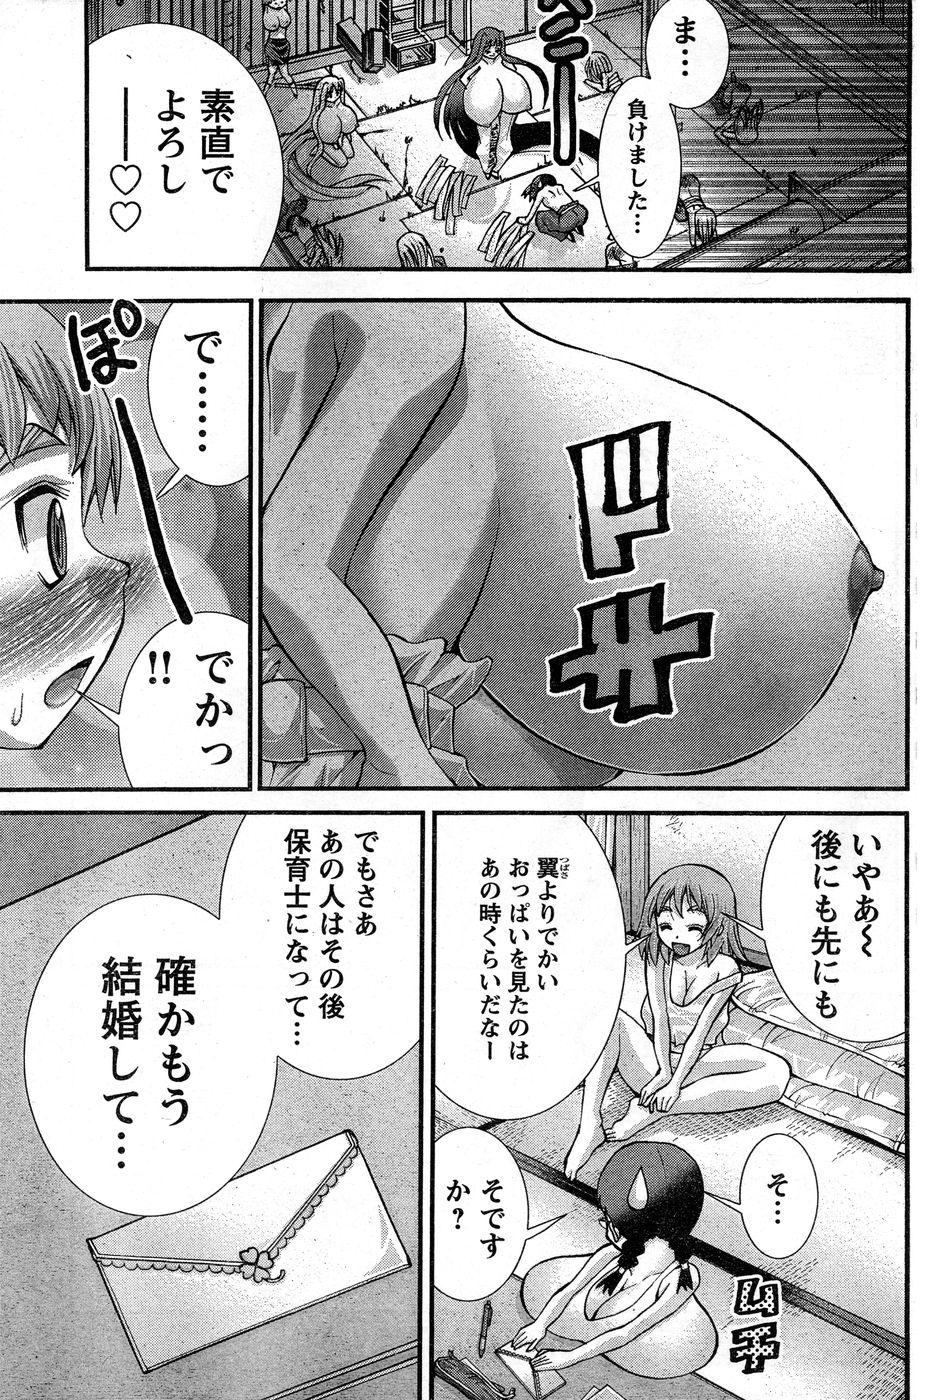 Kinky Yan hobo by matsuyama seiji Woman - Page 320